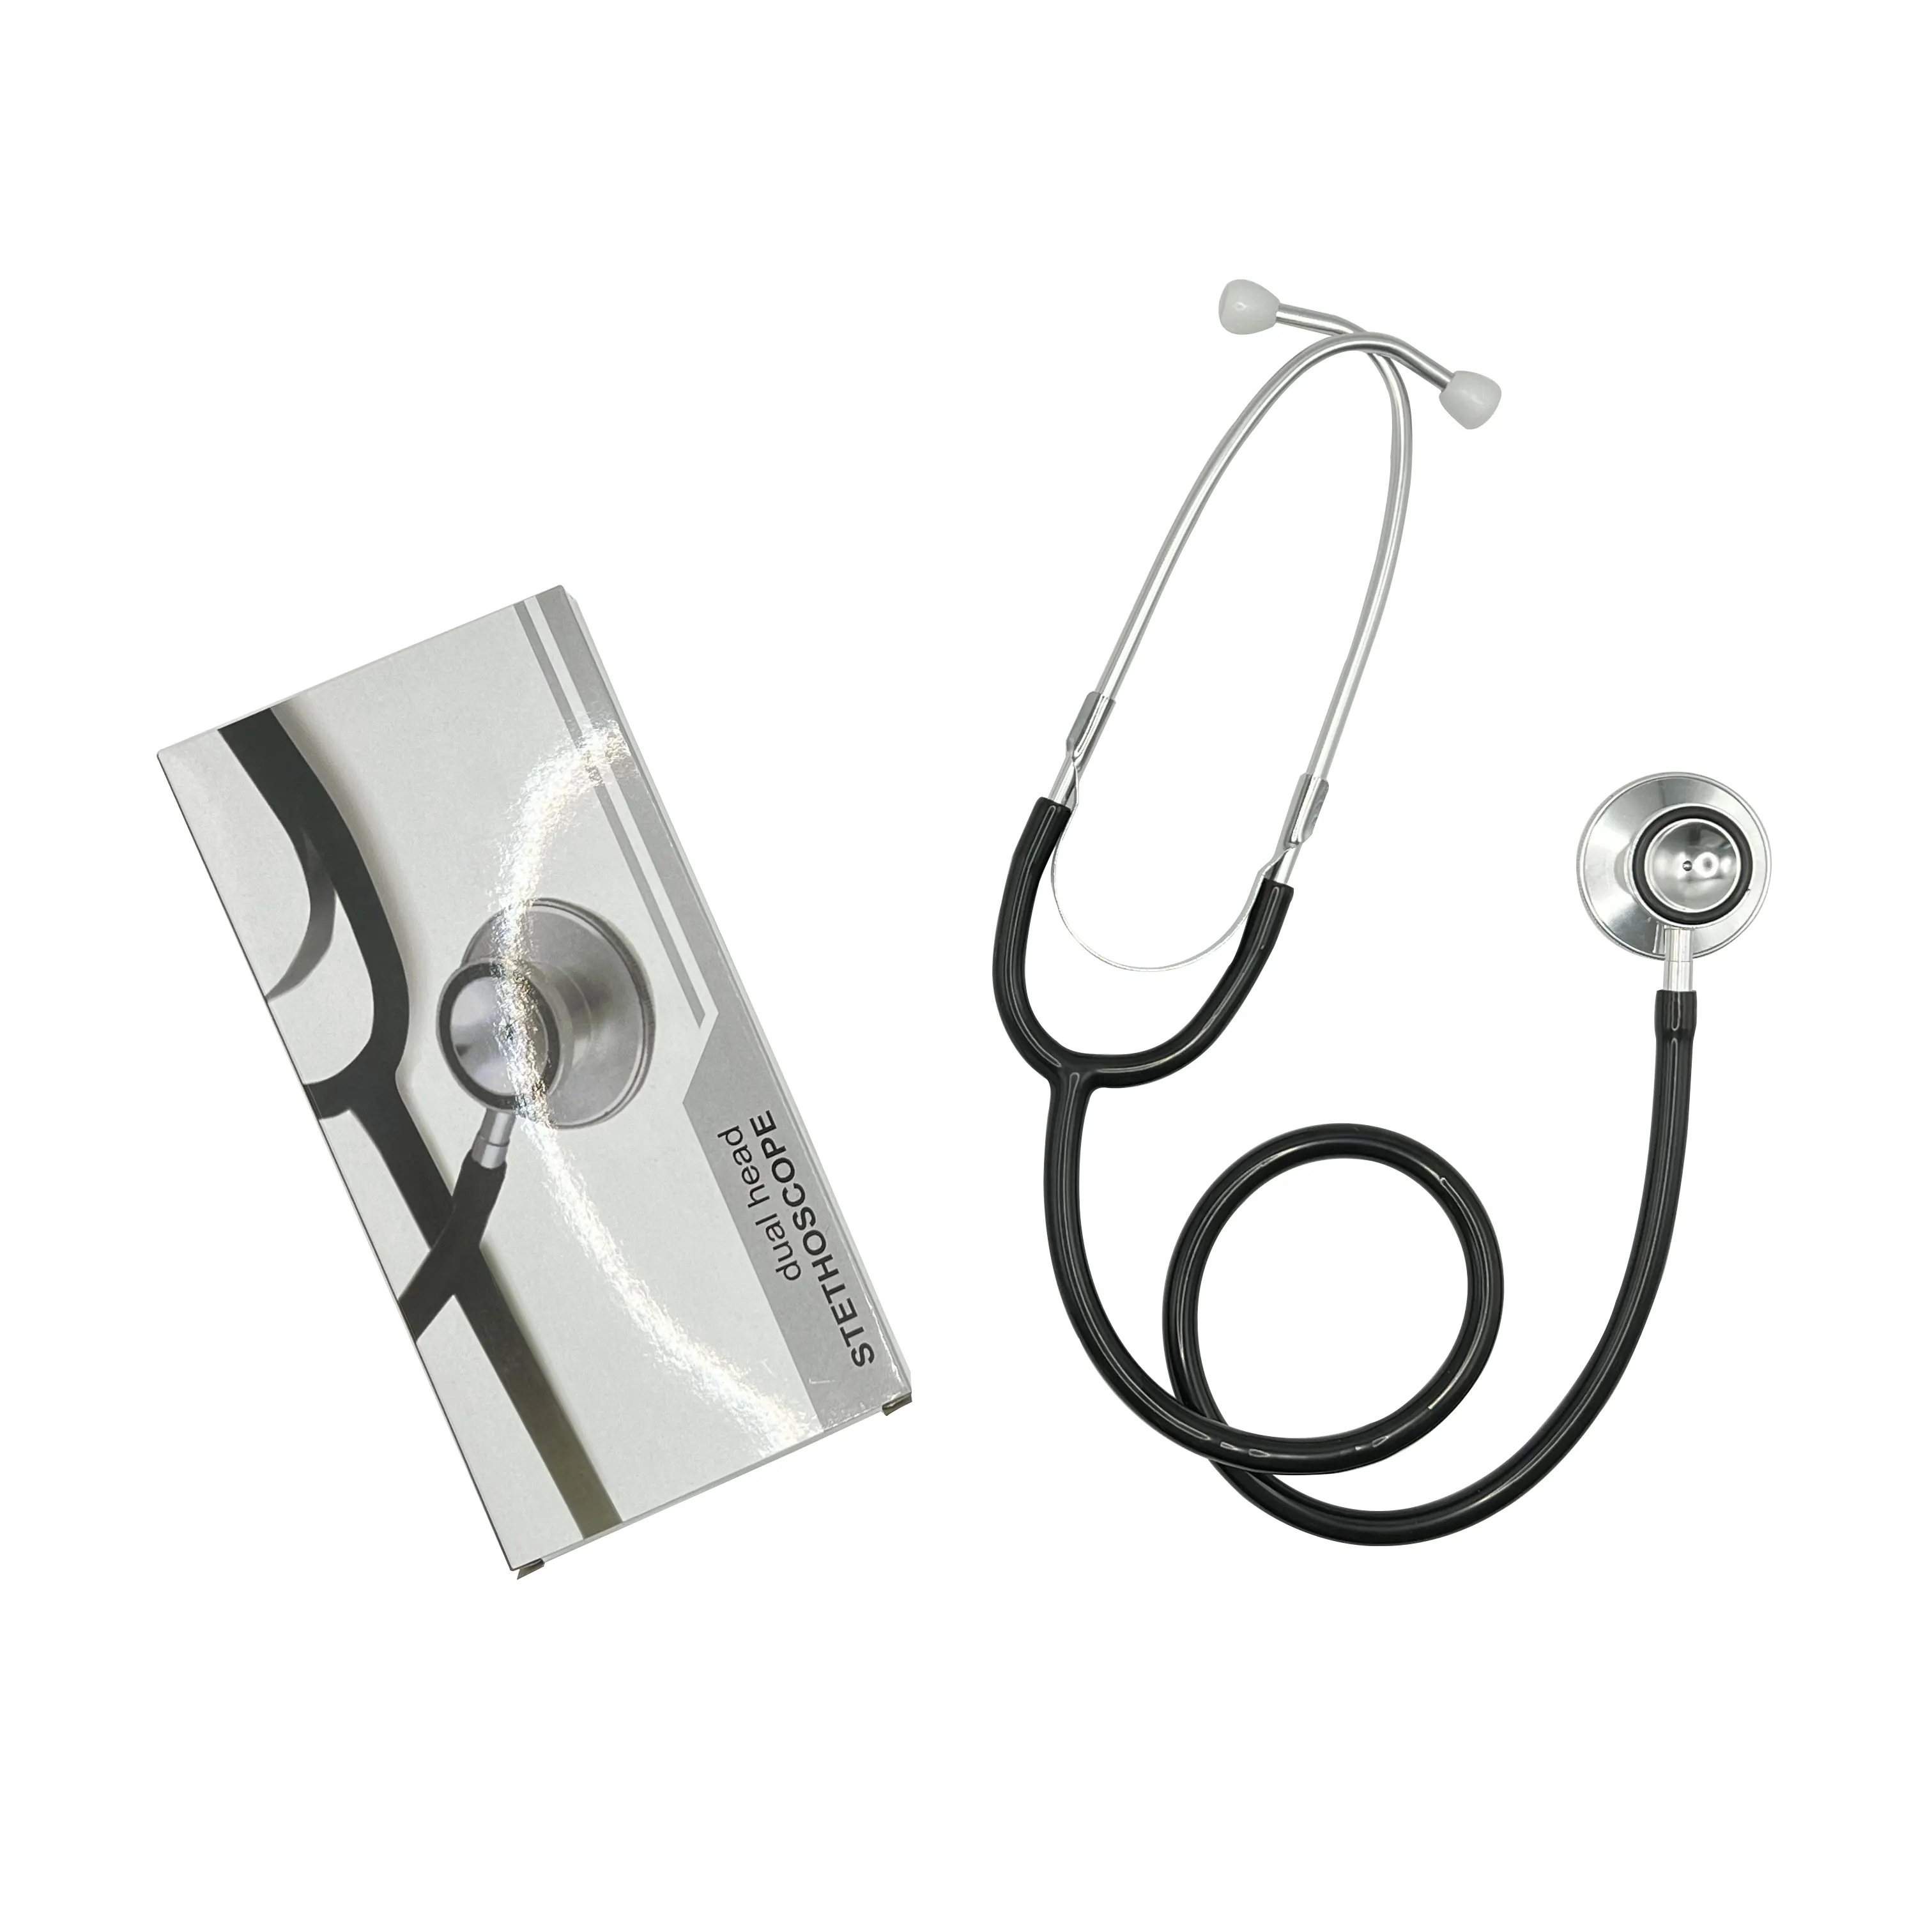 Garanzia stetoscopio medico pediatrico medico medico medico infermiere cardiologico